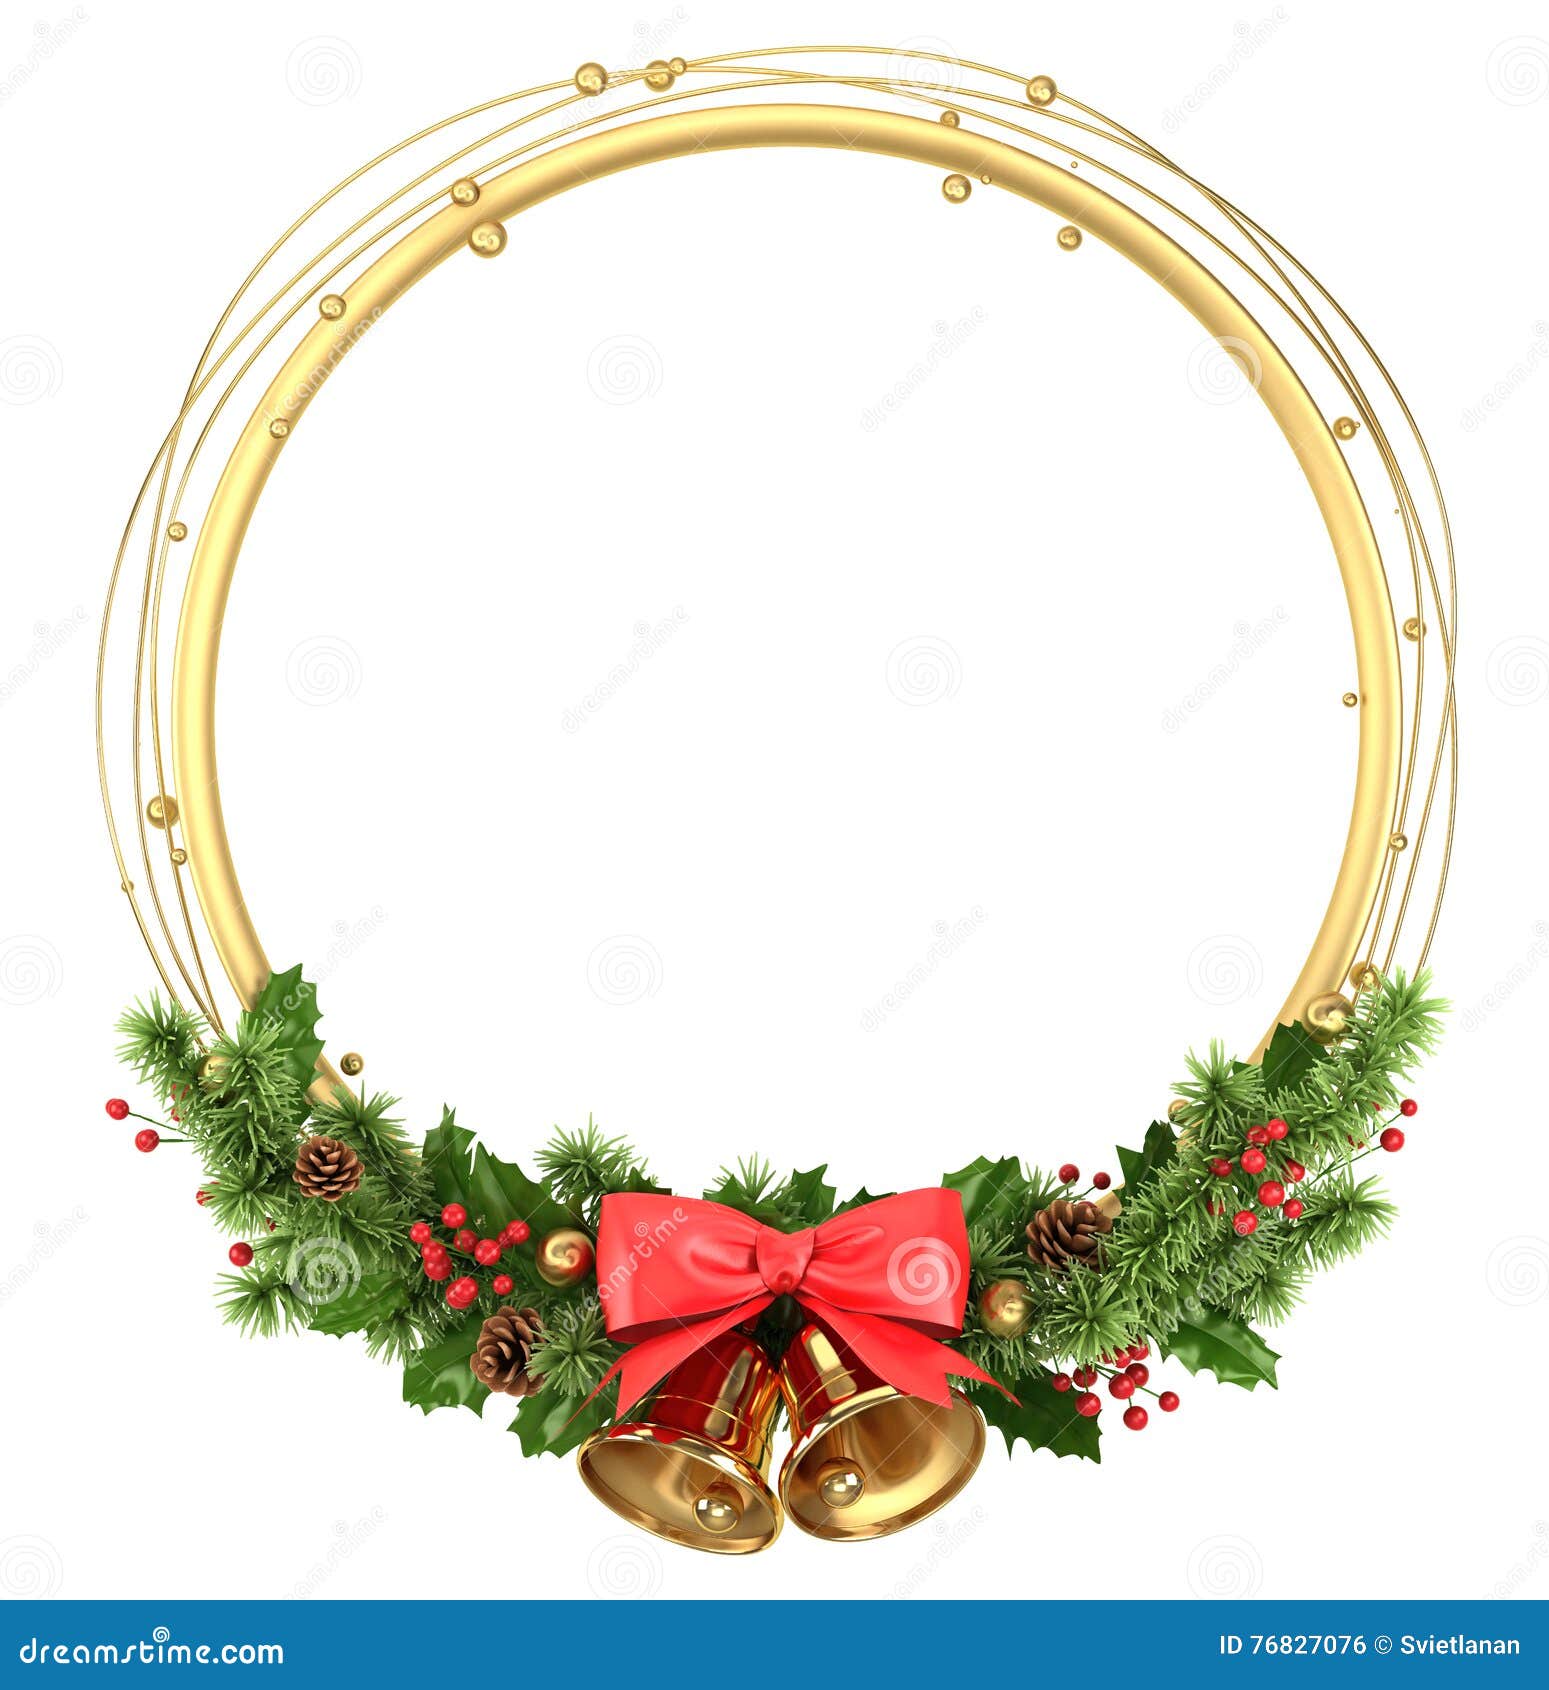 Marco Personalizado con Foto para decorar en Navidad con diseño circular